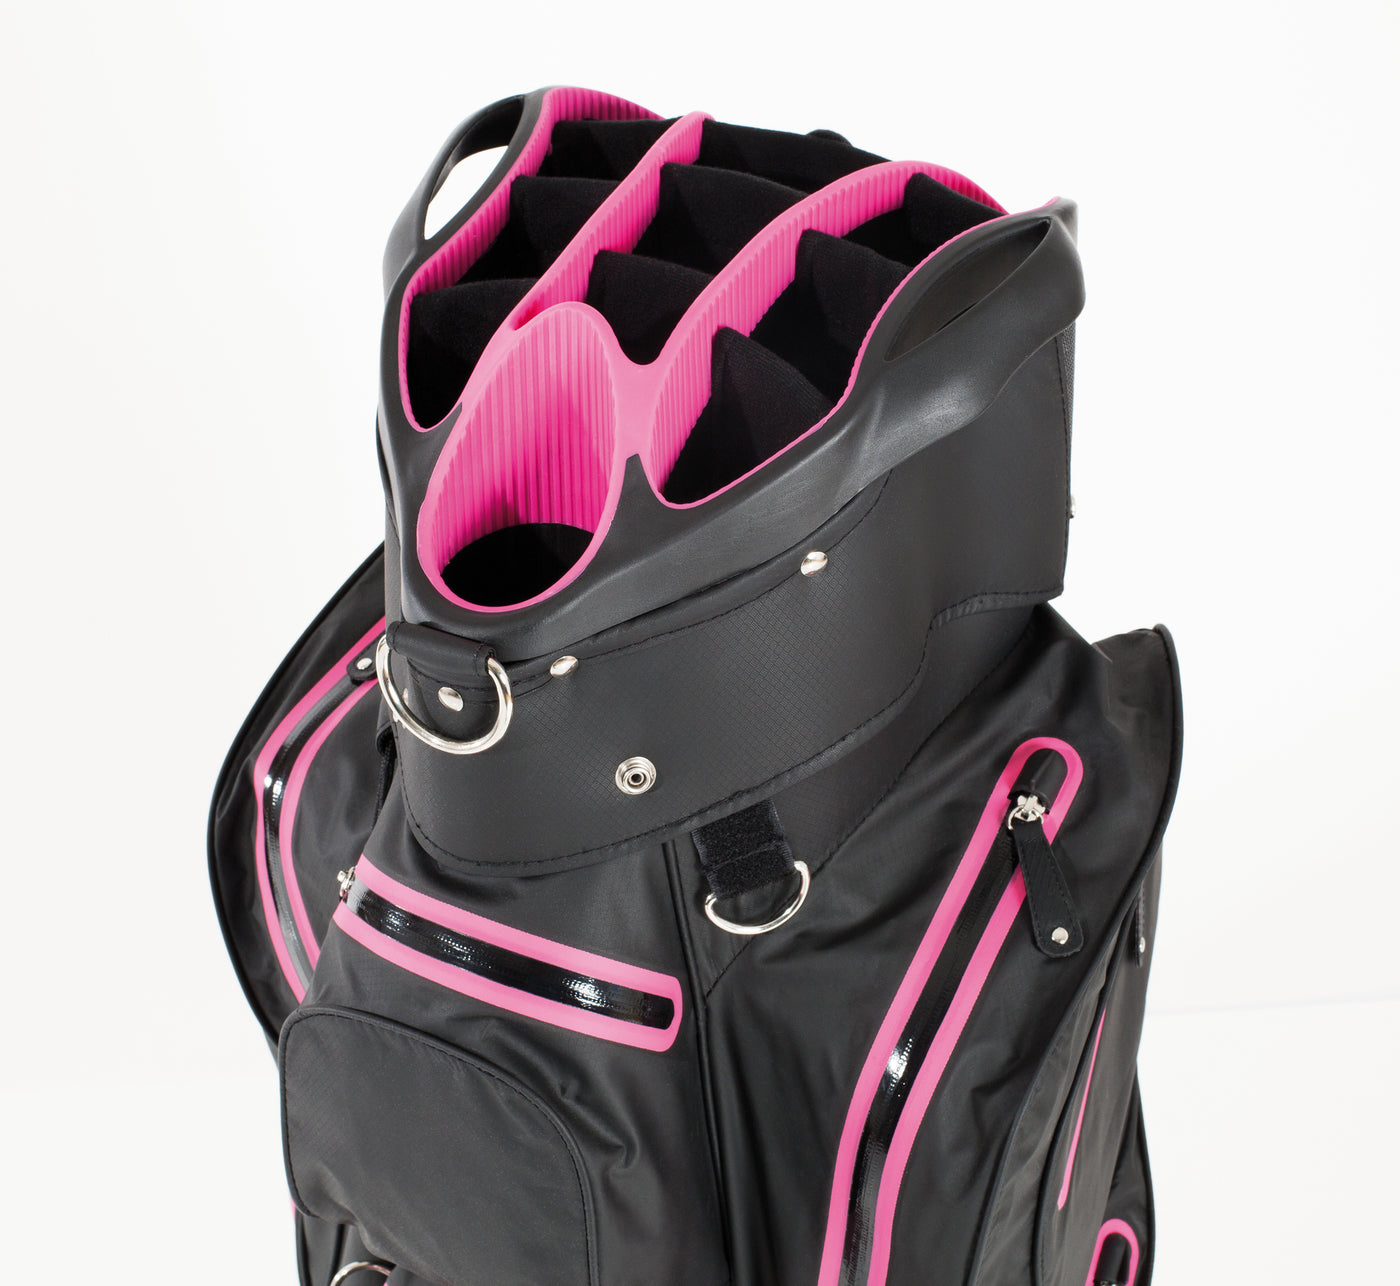 JuCad golf bag Aquastop - the waterproof lightweight